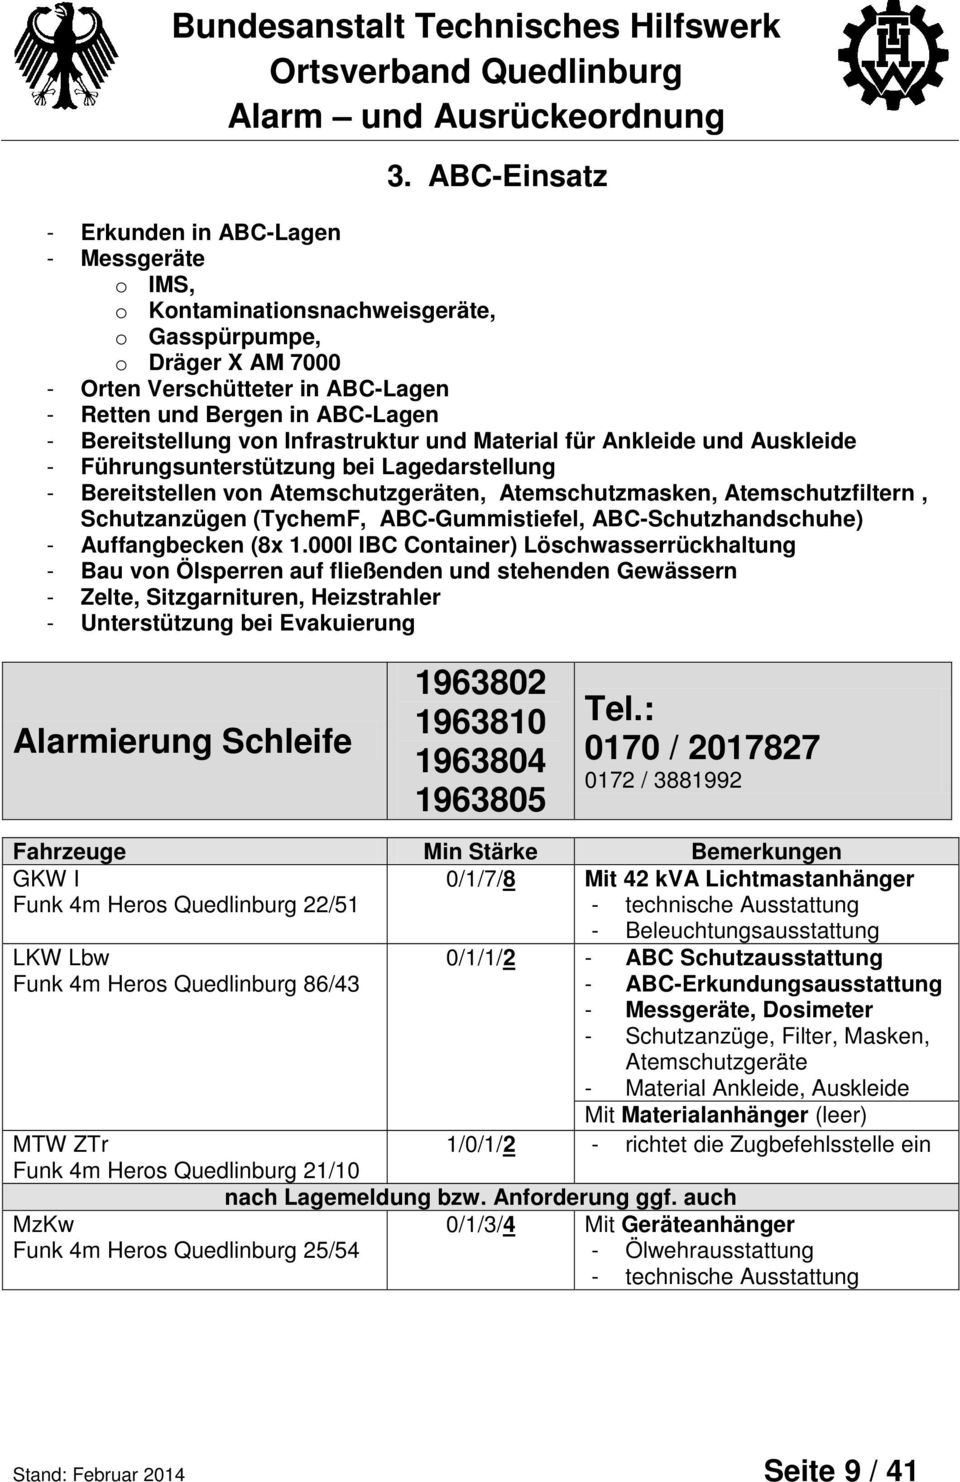 Schutzanzügen (TychemF, ABC-Gummistiefel, ABC-Schutzhandschuhe) - Auffangbecken (8x 1.